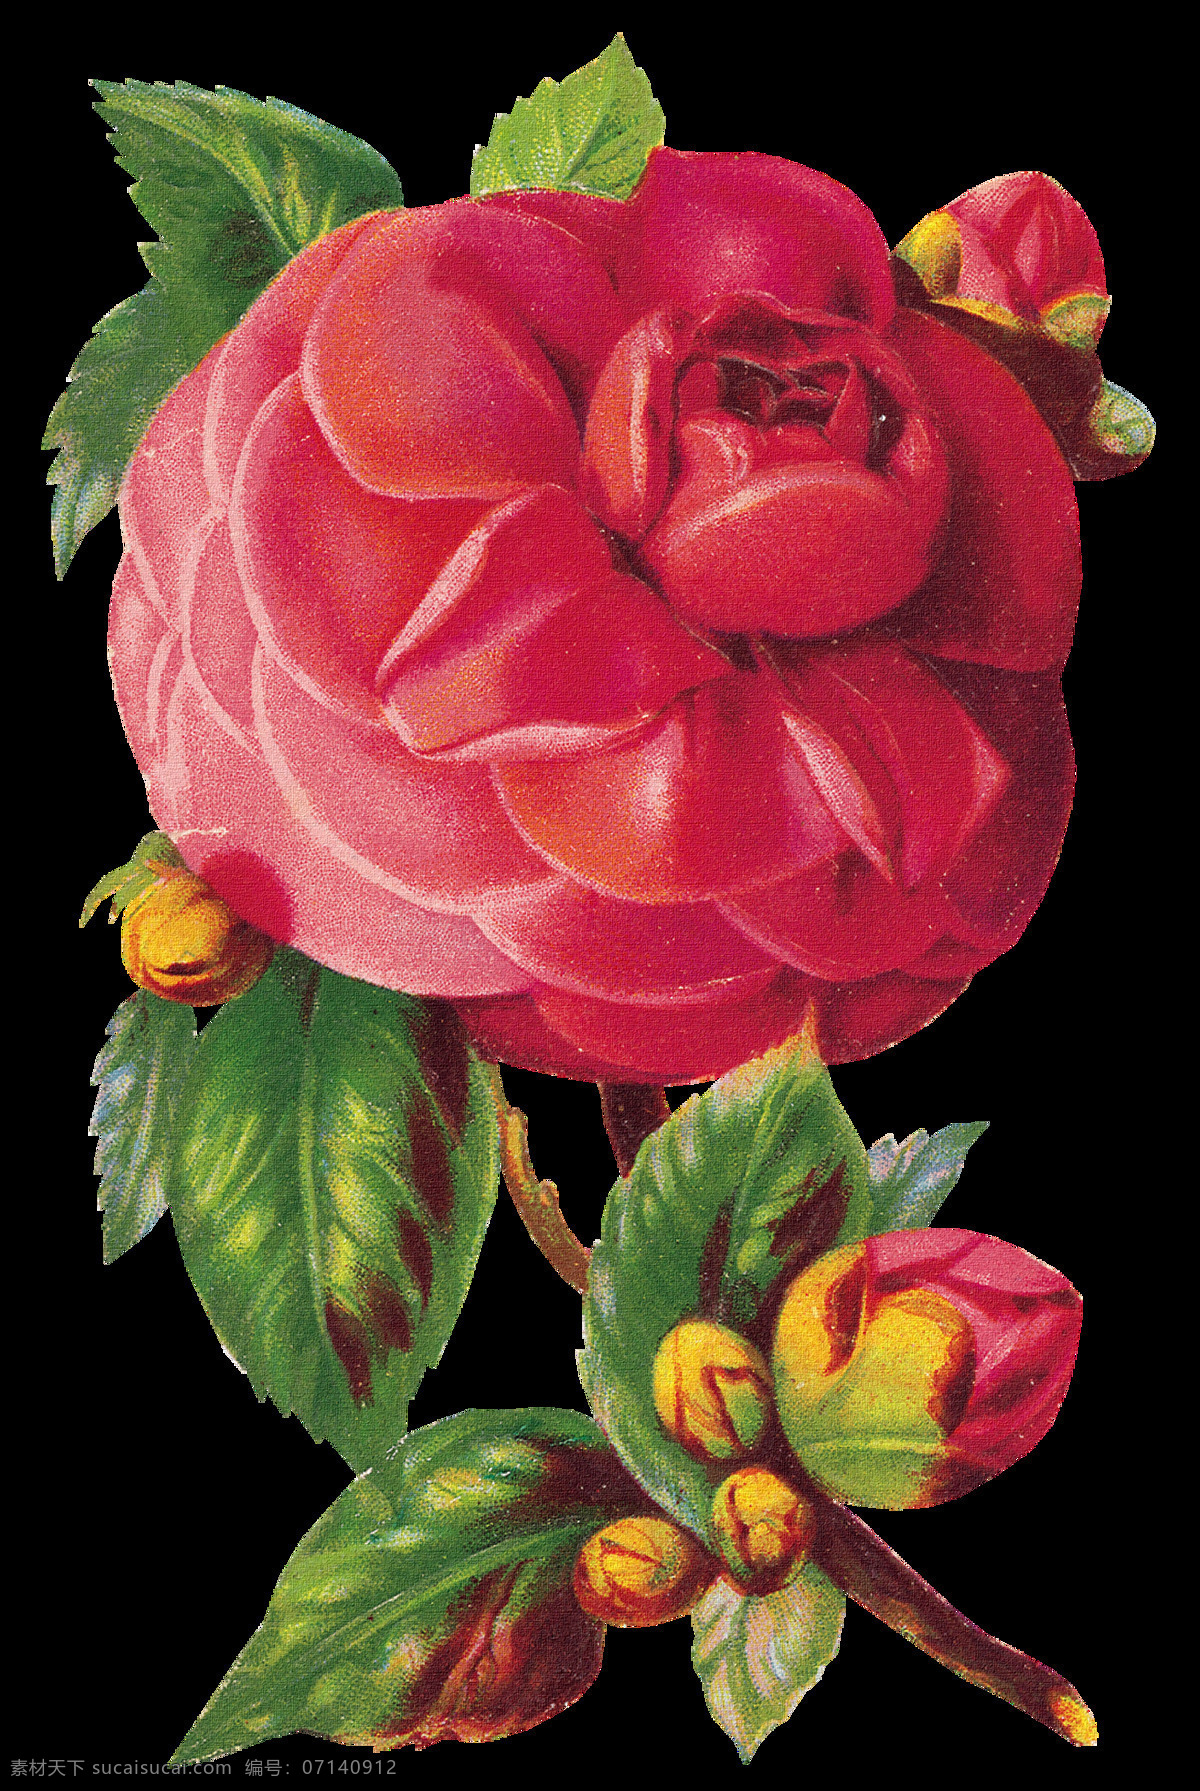 复古花朵 复古 花朵 设计素材 模板下载 手绘花朵 静物花卉 绘画花朵 绘画书法 文化艺术 花朵素材